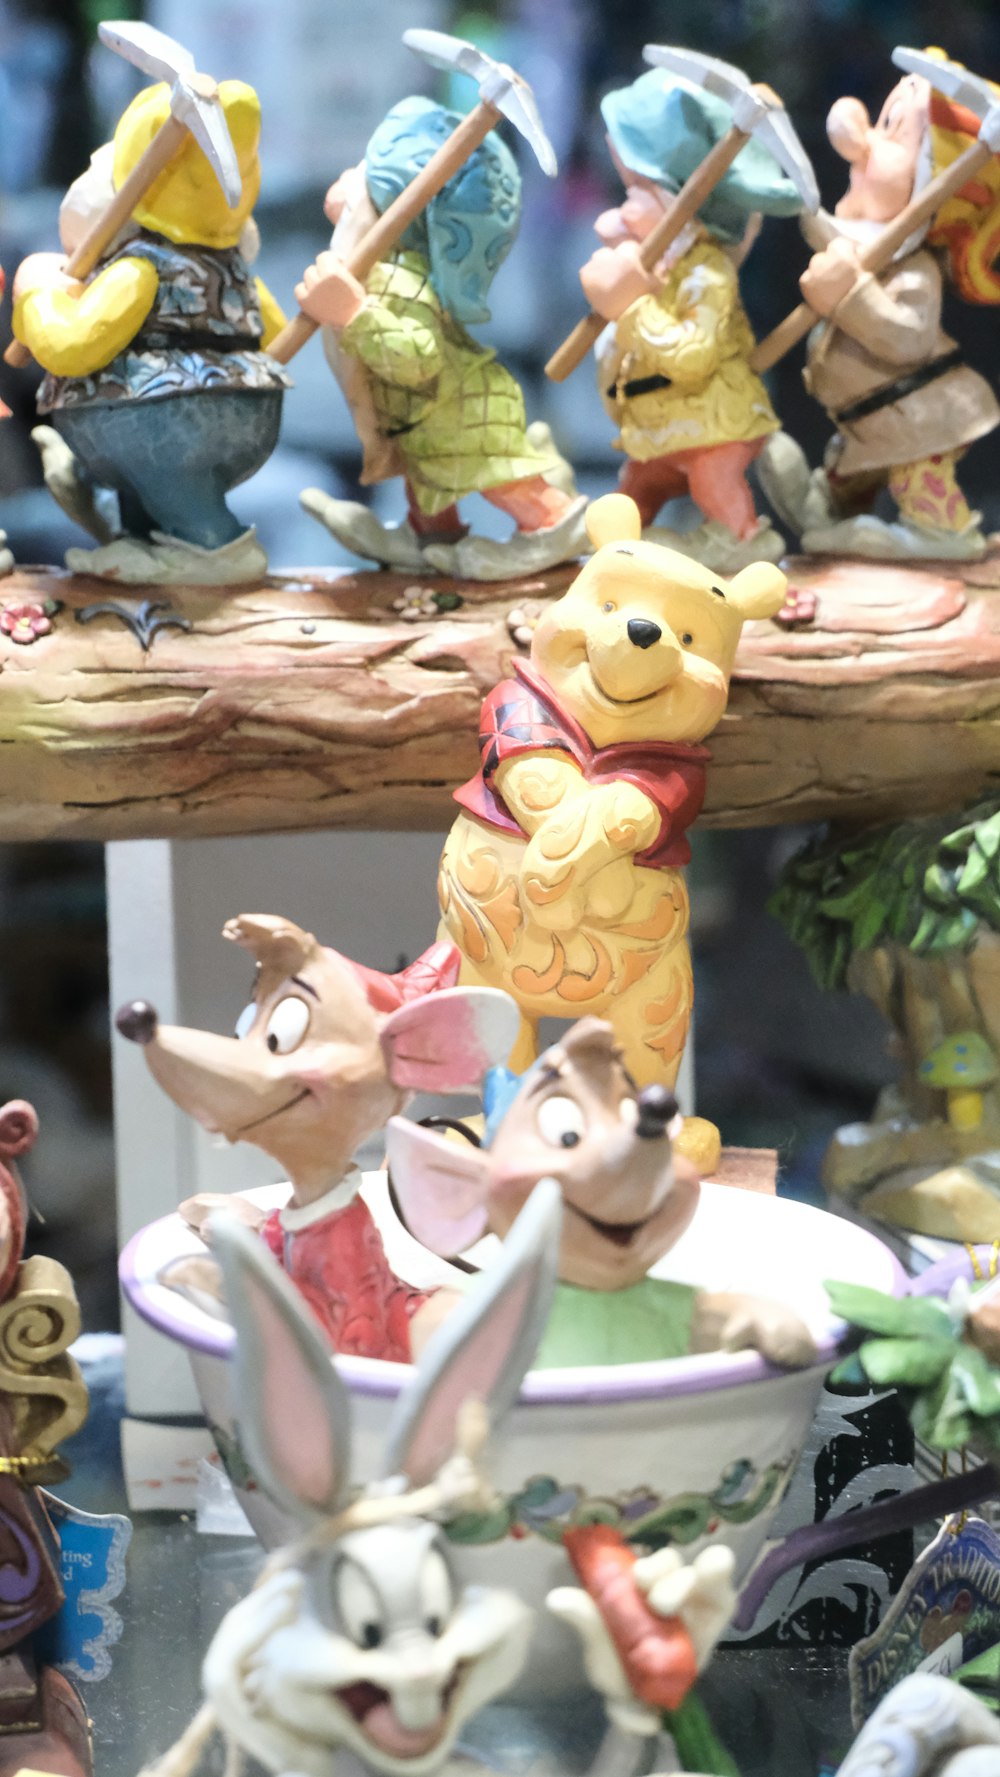 Un gruppo di figurine di Winnie the Pooh